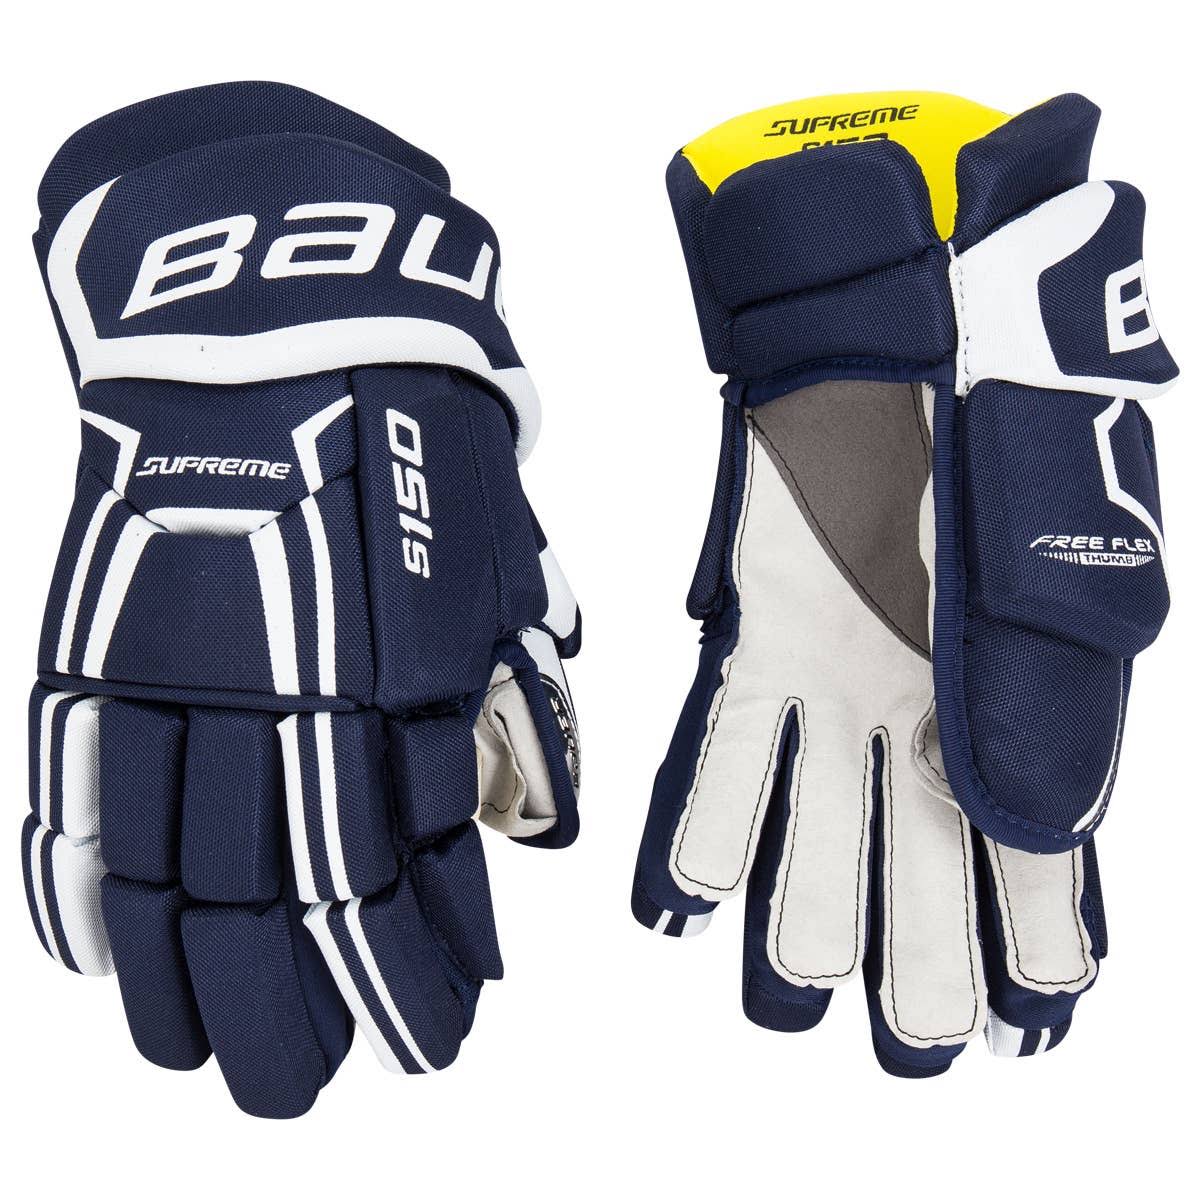 Bauer SUPREME S150 Junior Hockey Gloves